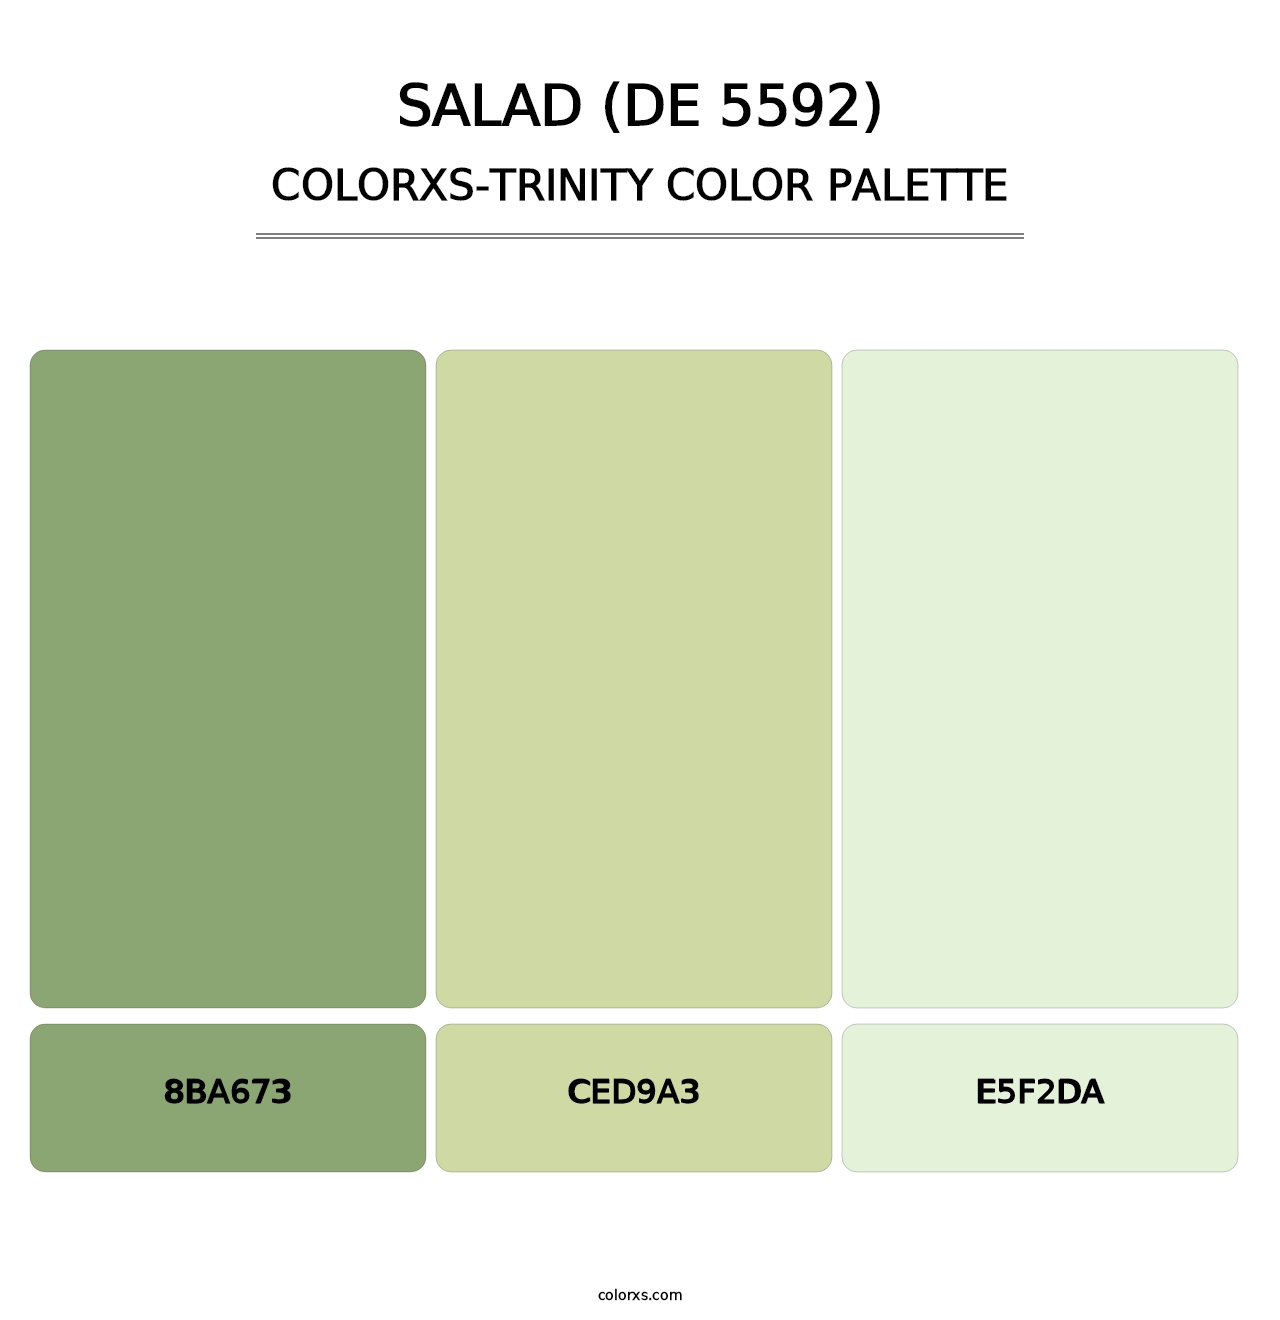 Salad (DE 5592) - Colorxs Trinity Palette